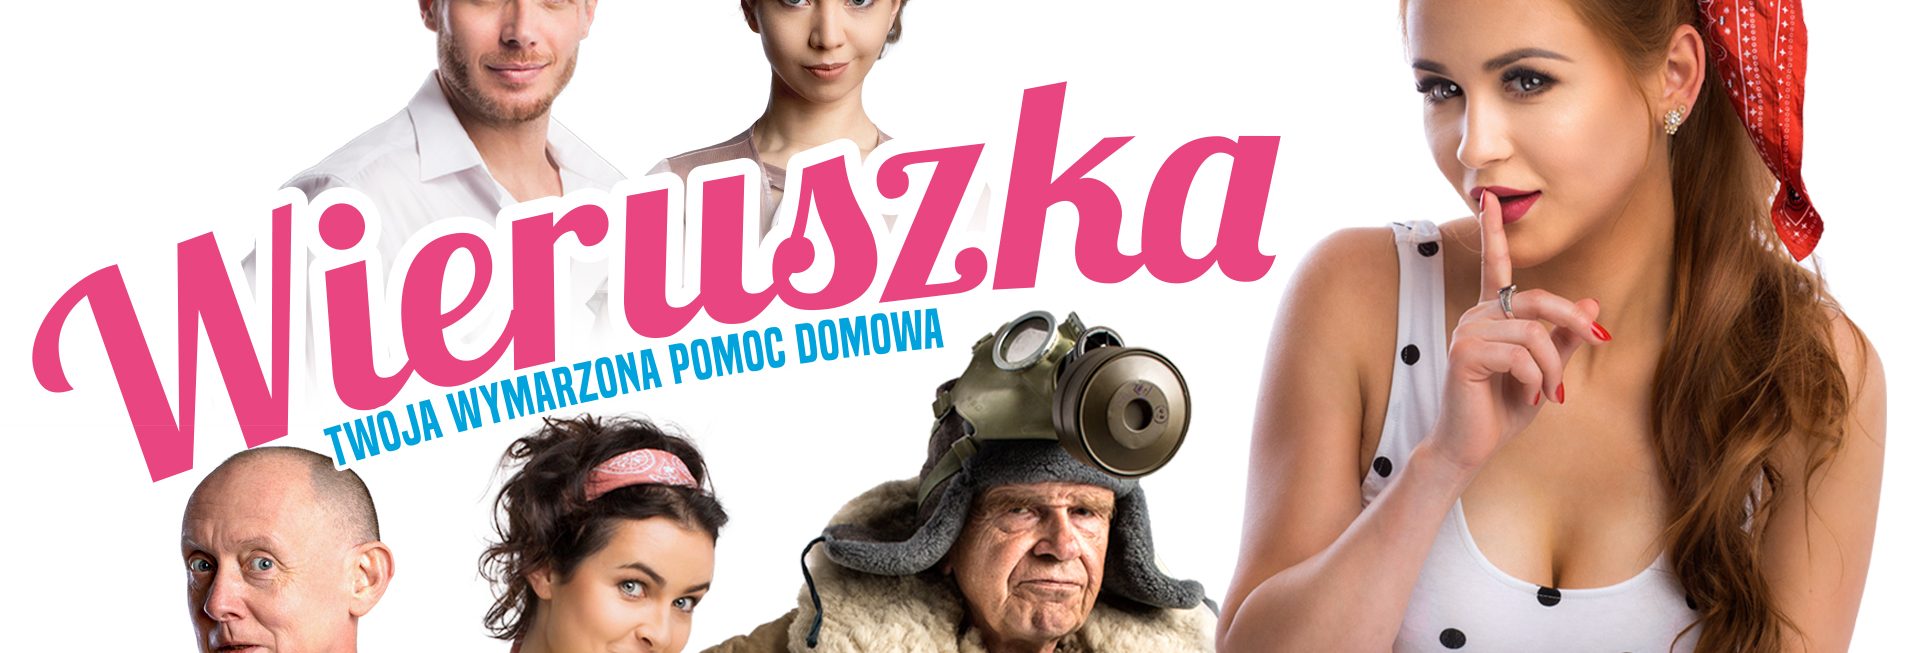 Plakat graficzny zapraszający do Szczytna na seans teatralny „Wieruszka, czyli Twoja wymarzona pomoc domowa” Szczytno 2022.